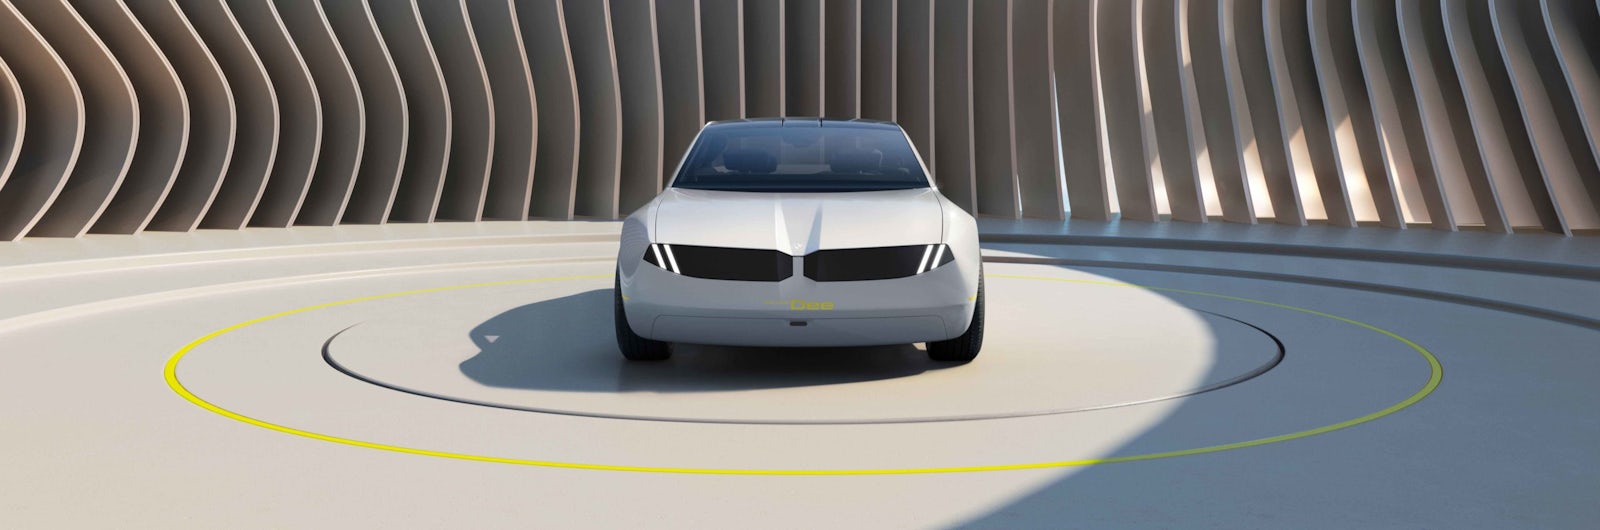 Neue BMW-Modelle: Das plant der Hersteller bis 2025